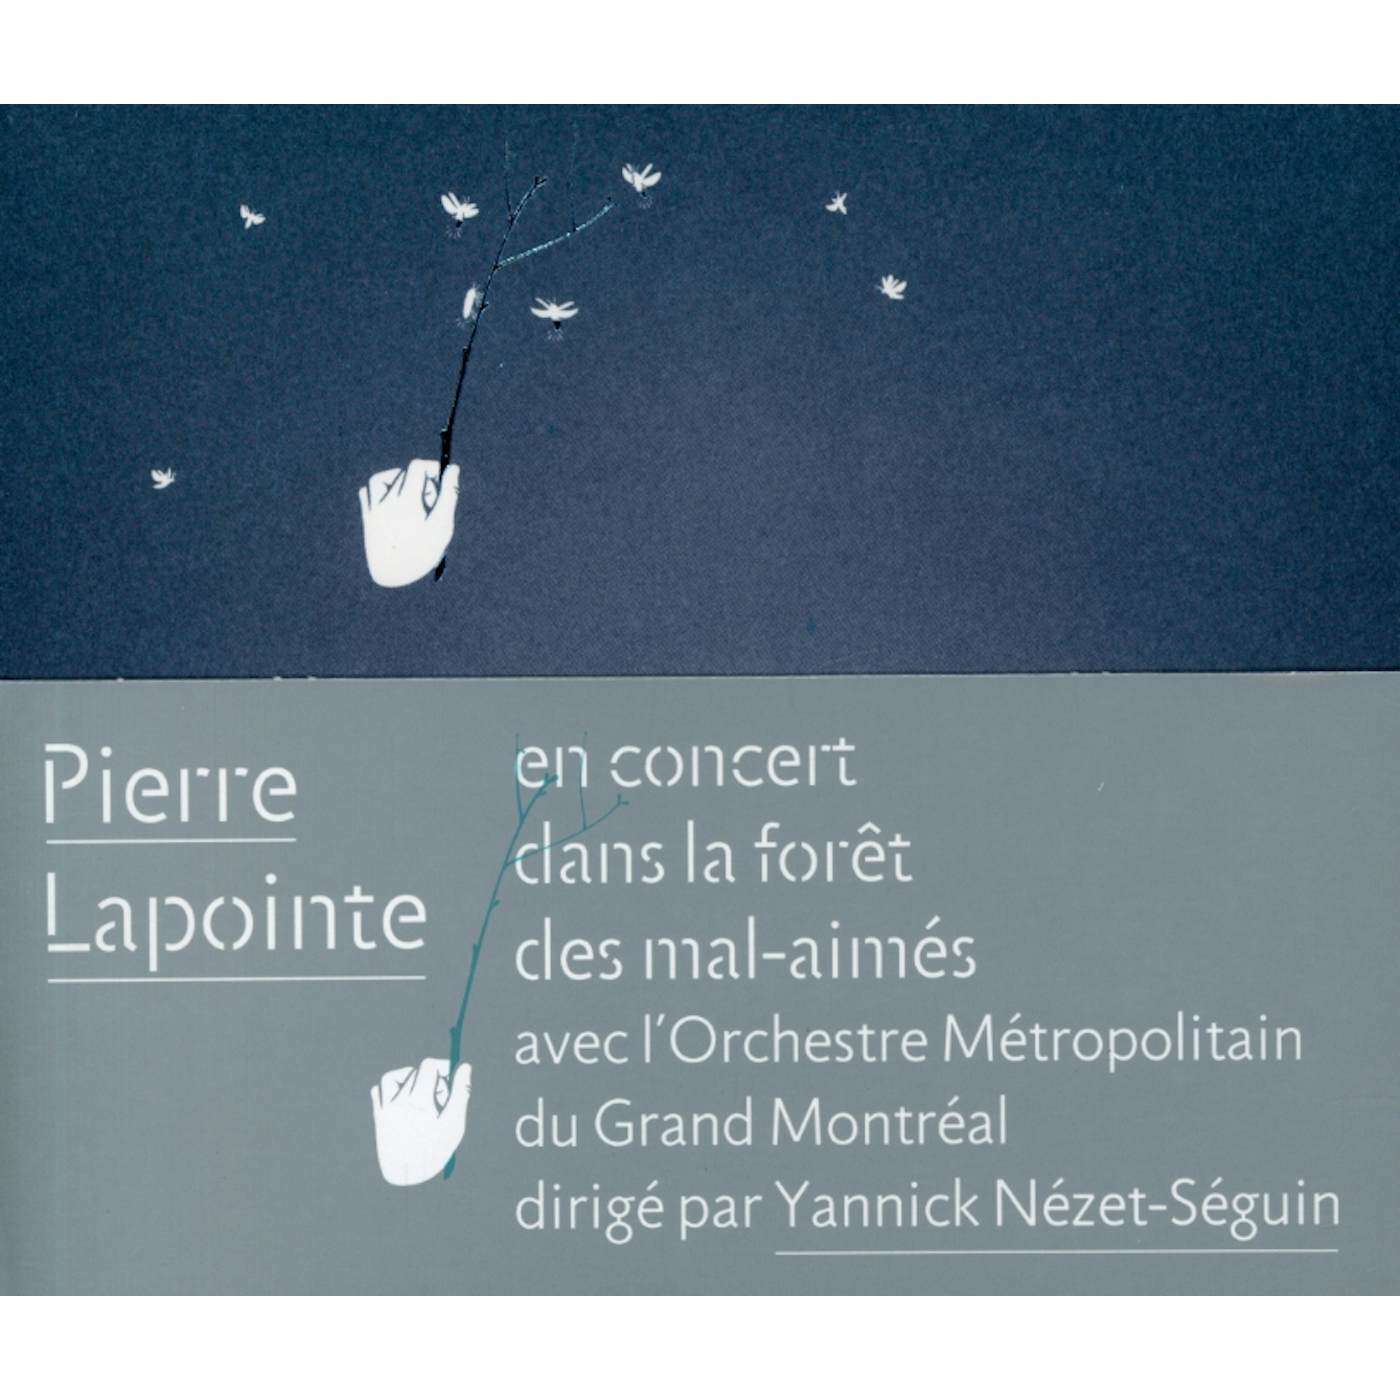 Pierre Lapointe LIVE AVC L'ORCHESTRE METROPOLITAIN CD